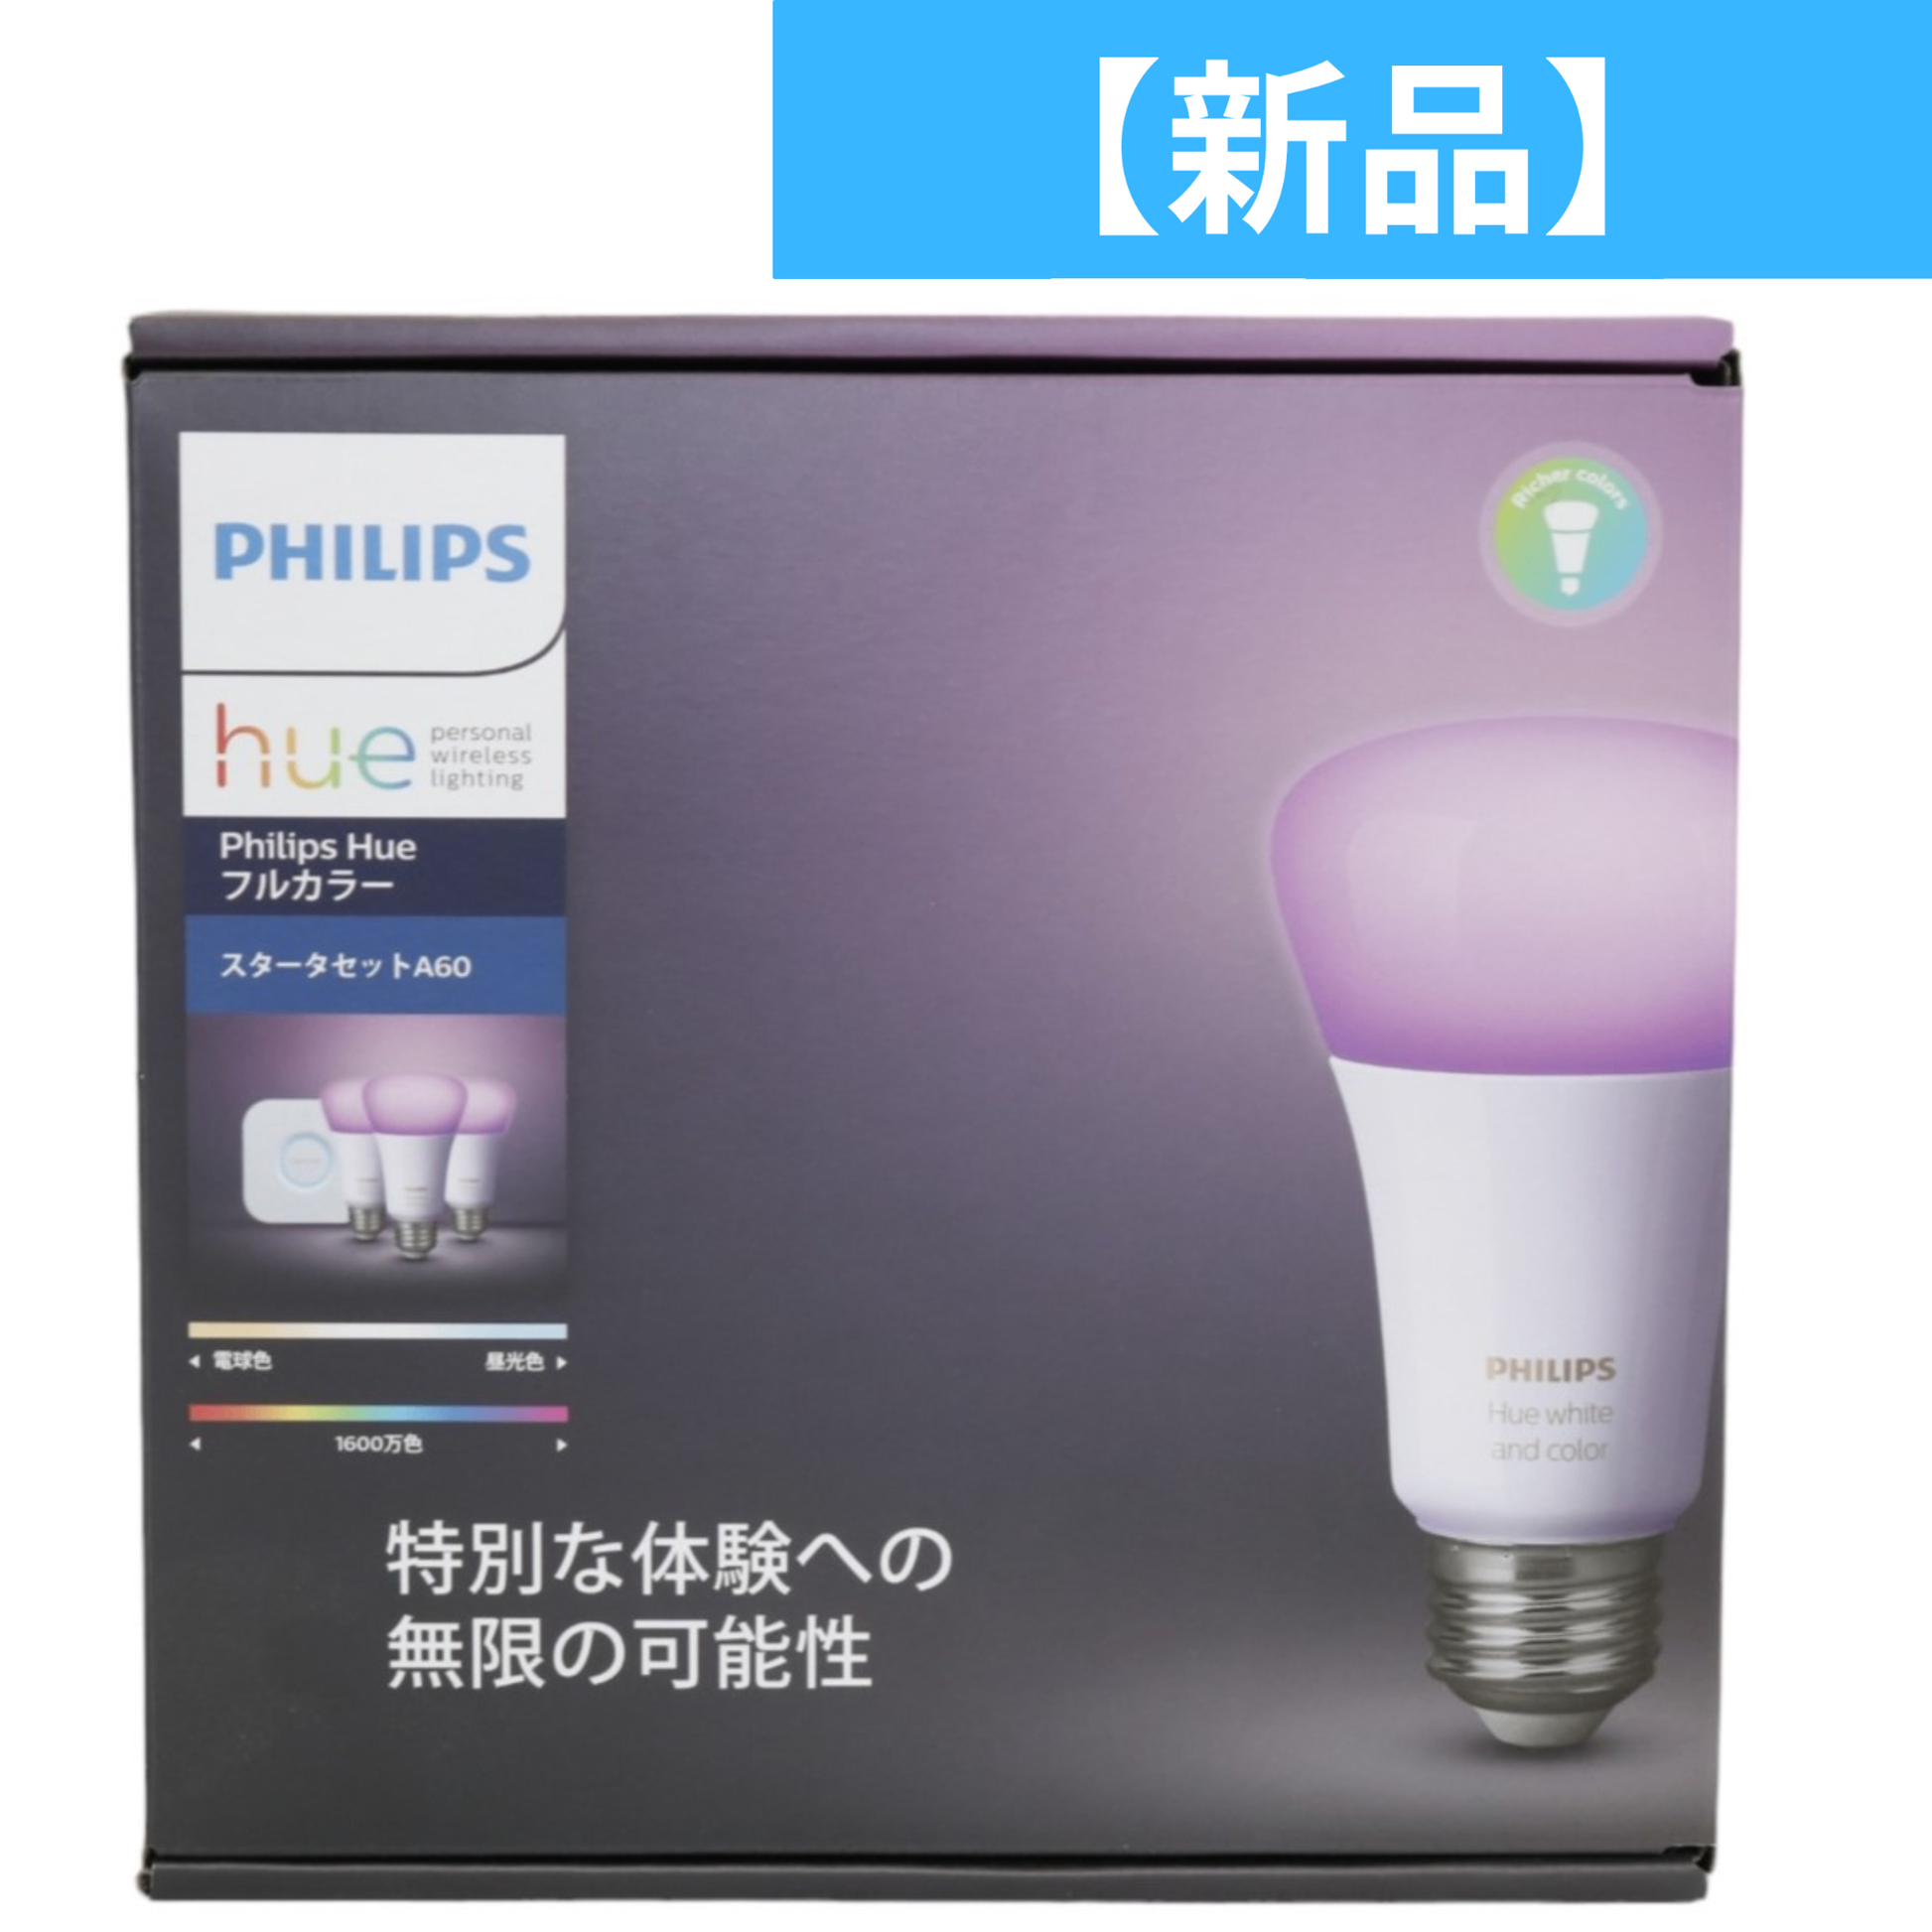 【新品】 Philips Hue フルカラー スターターセット Bluetooth+Zigbee スマート電球